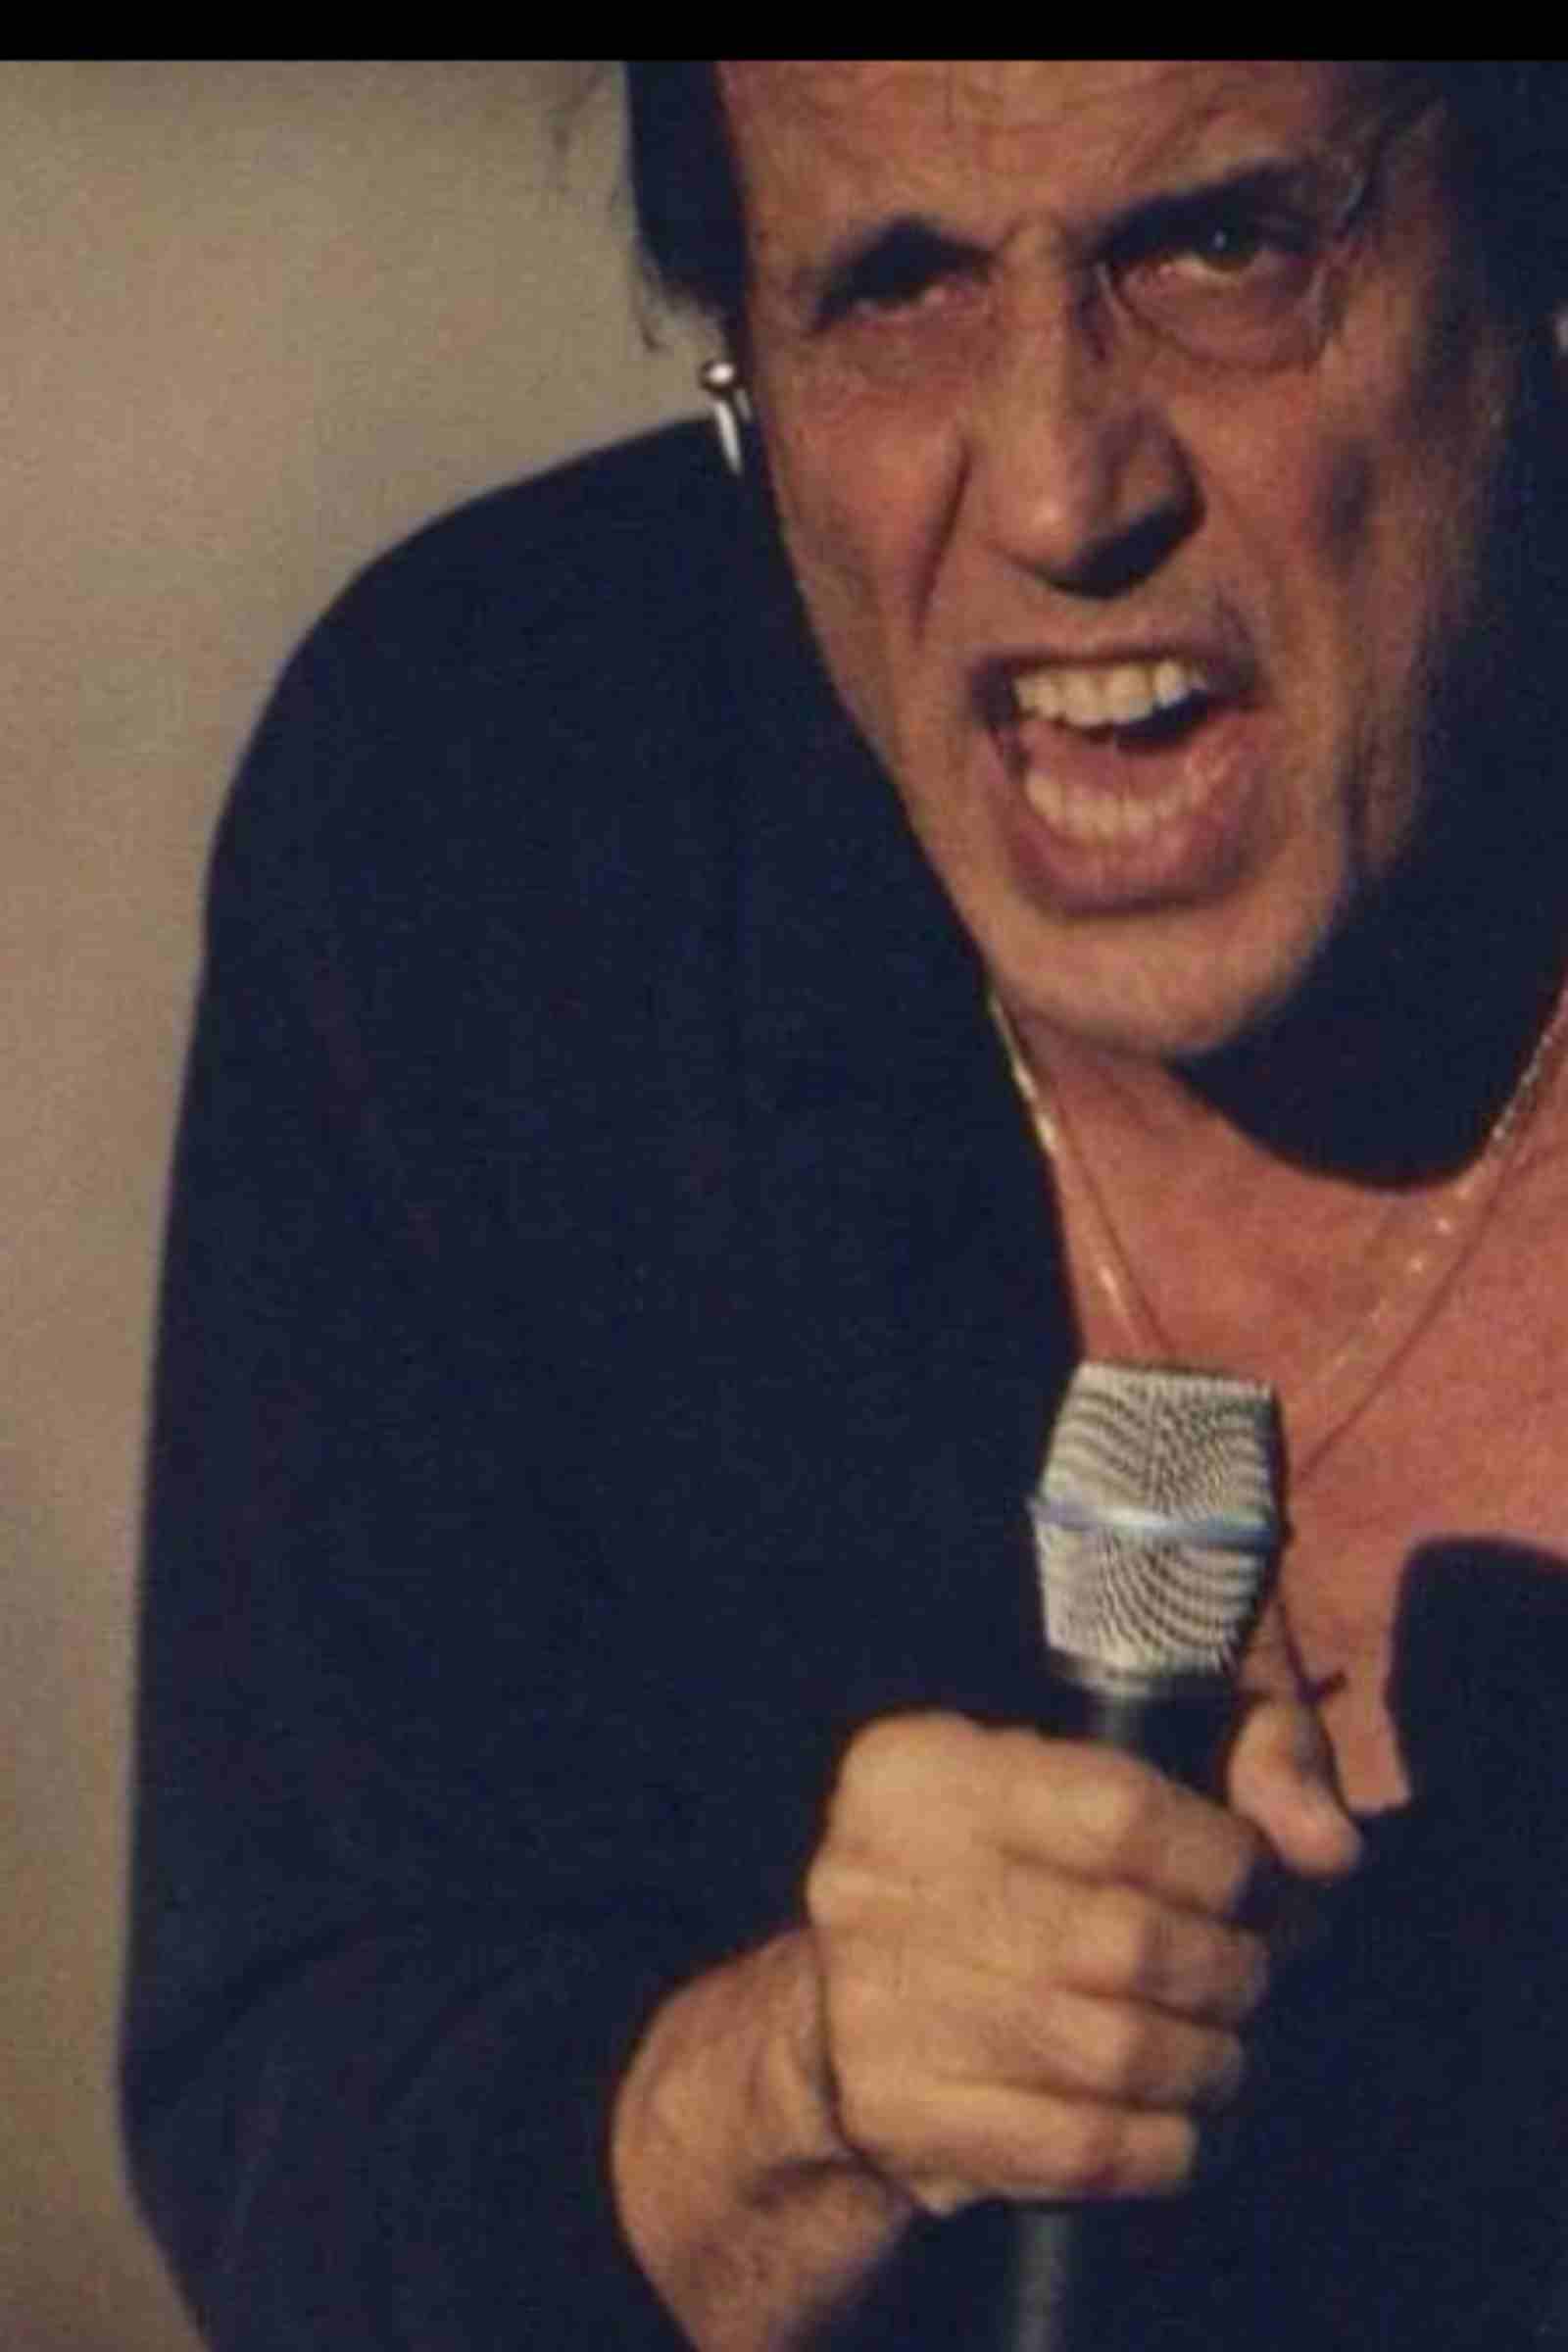 Adriano Celentano sbeffeggiato gesto video virale